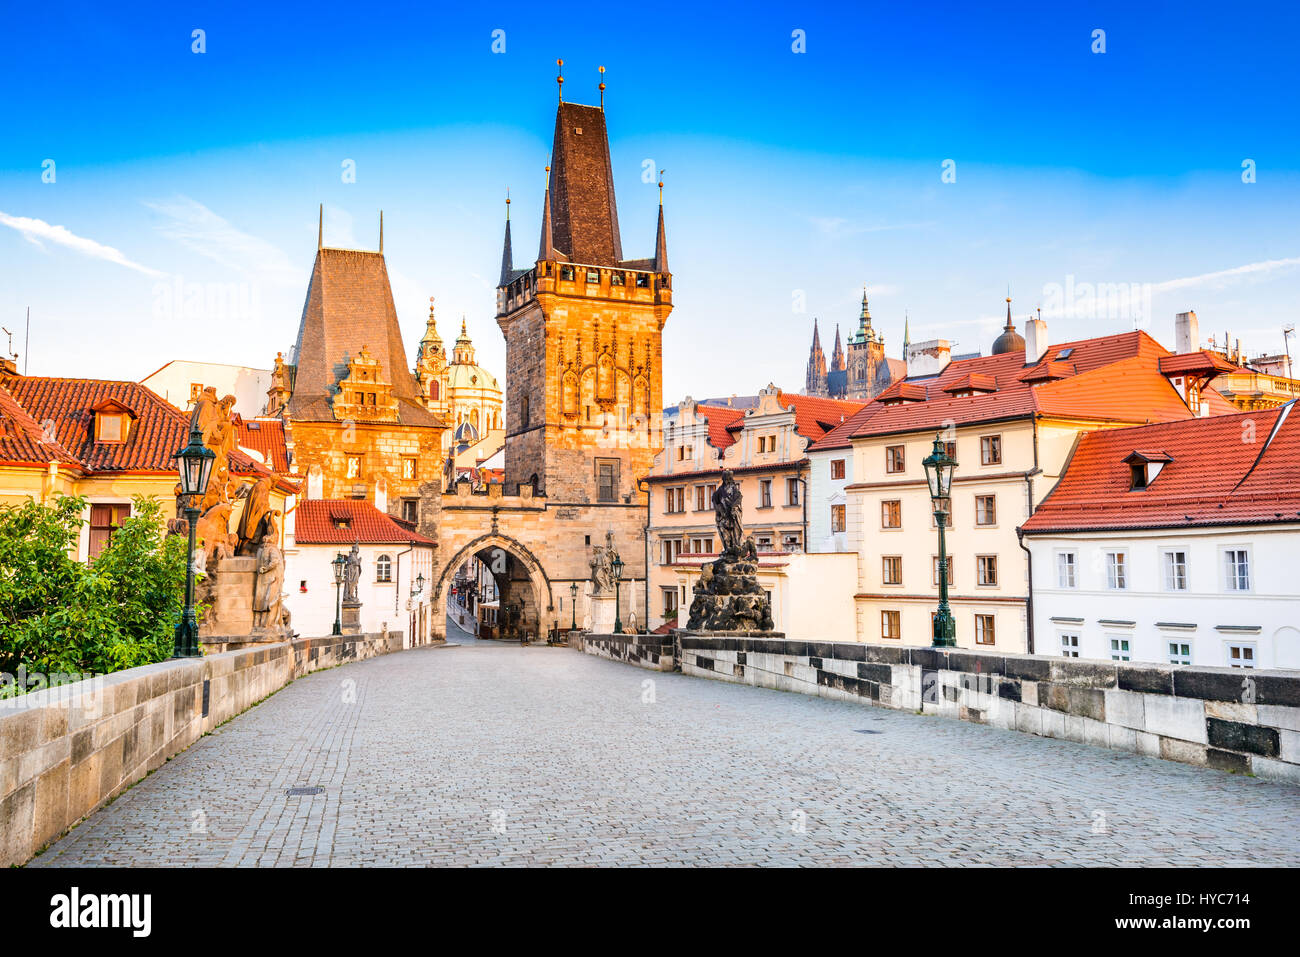 Prague, République tchèque. Pont Charles avec sa statuette, tour du pont de la vieille ville et la tour du pont Judith. Banque D'Images